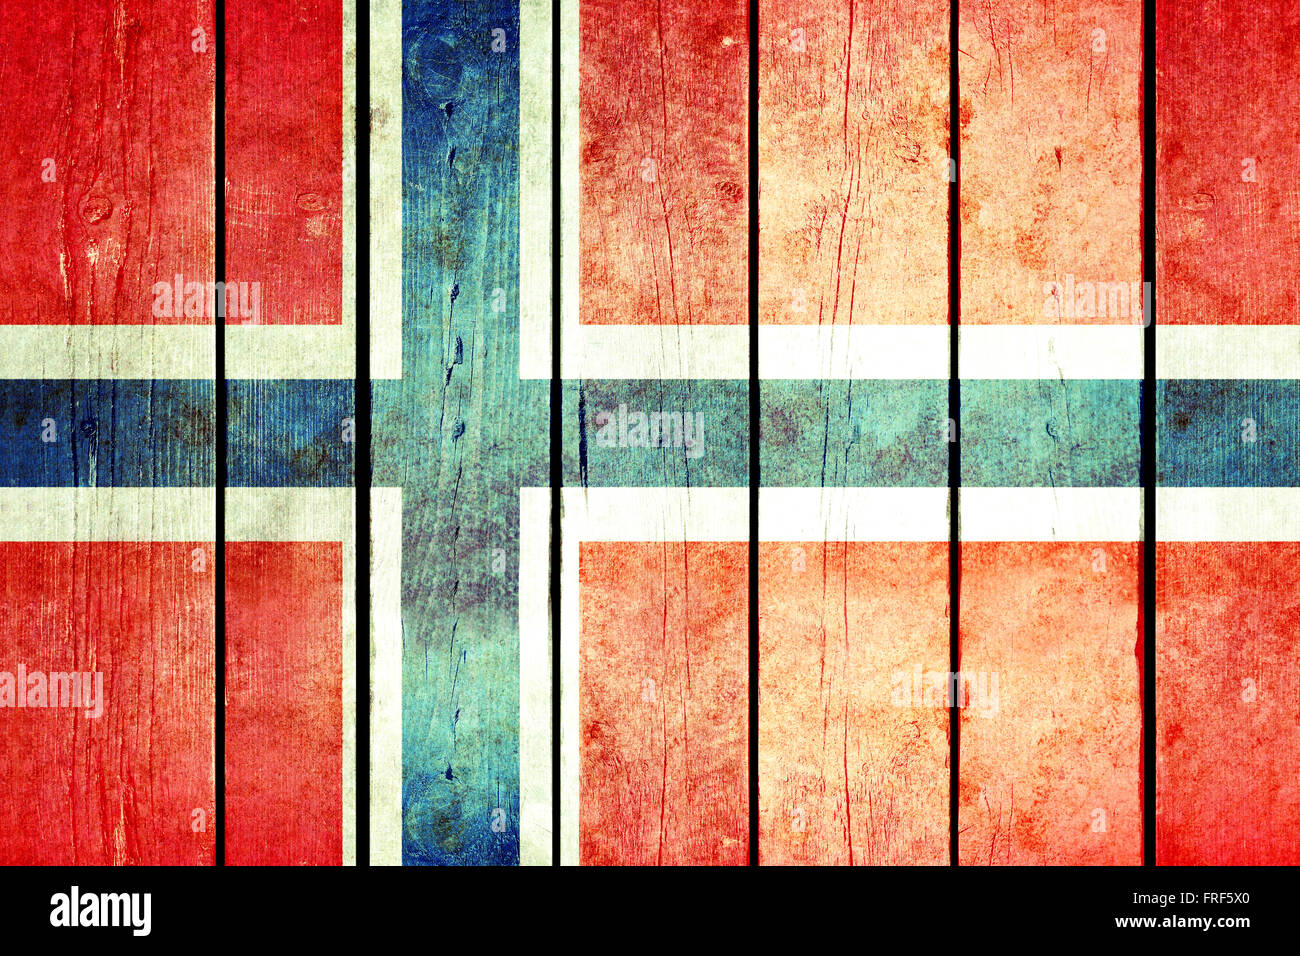 Norwegen-hölzerne Grunge-Flagge. Norwegen-Flagge auf die alten Holzbohlen gemalt. Vintage Retro-Bild aus meiner Sammlung von Fahnen. Stockfoto